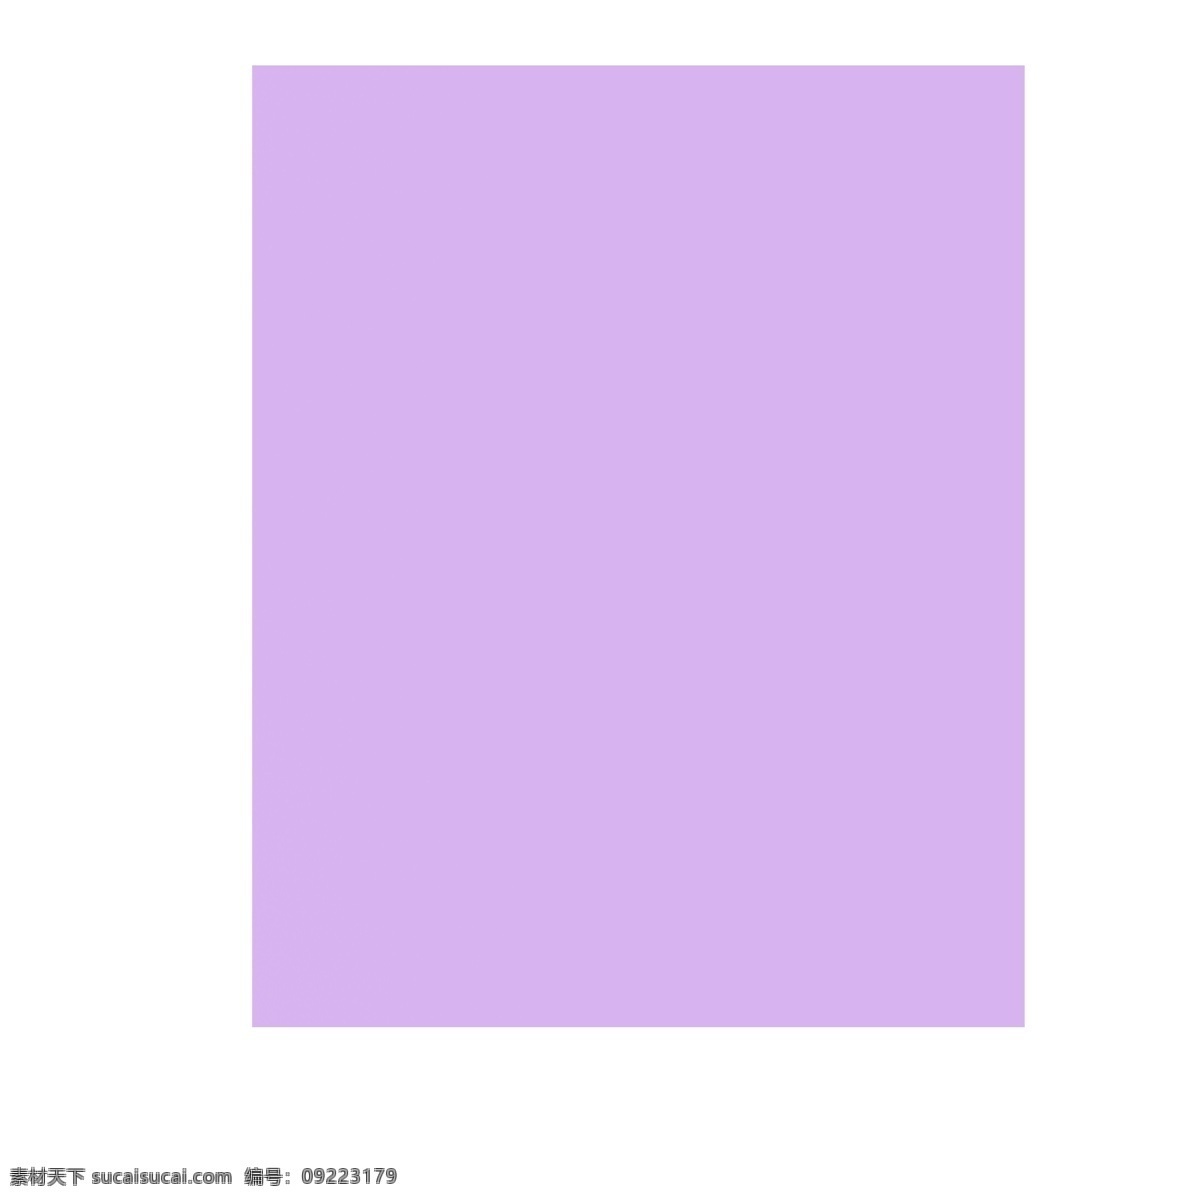 紫色矩形 矩形 紫色 背景